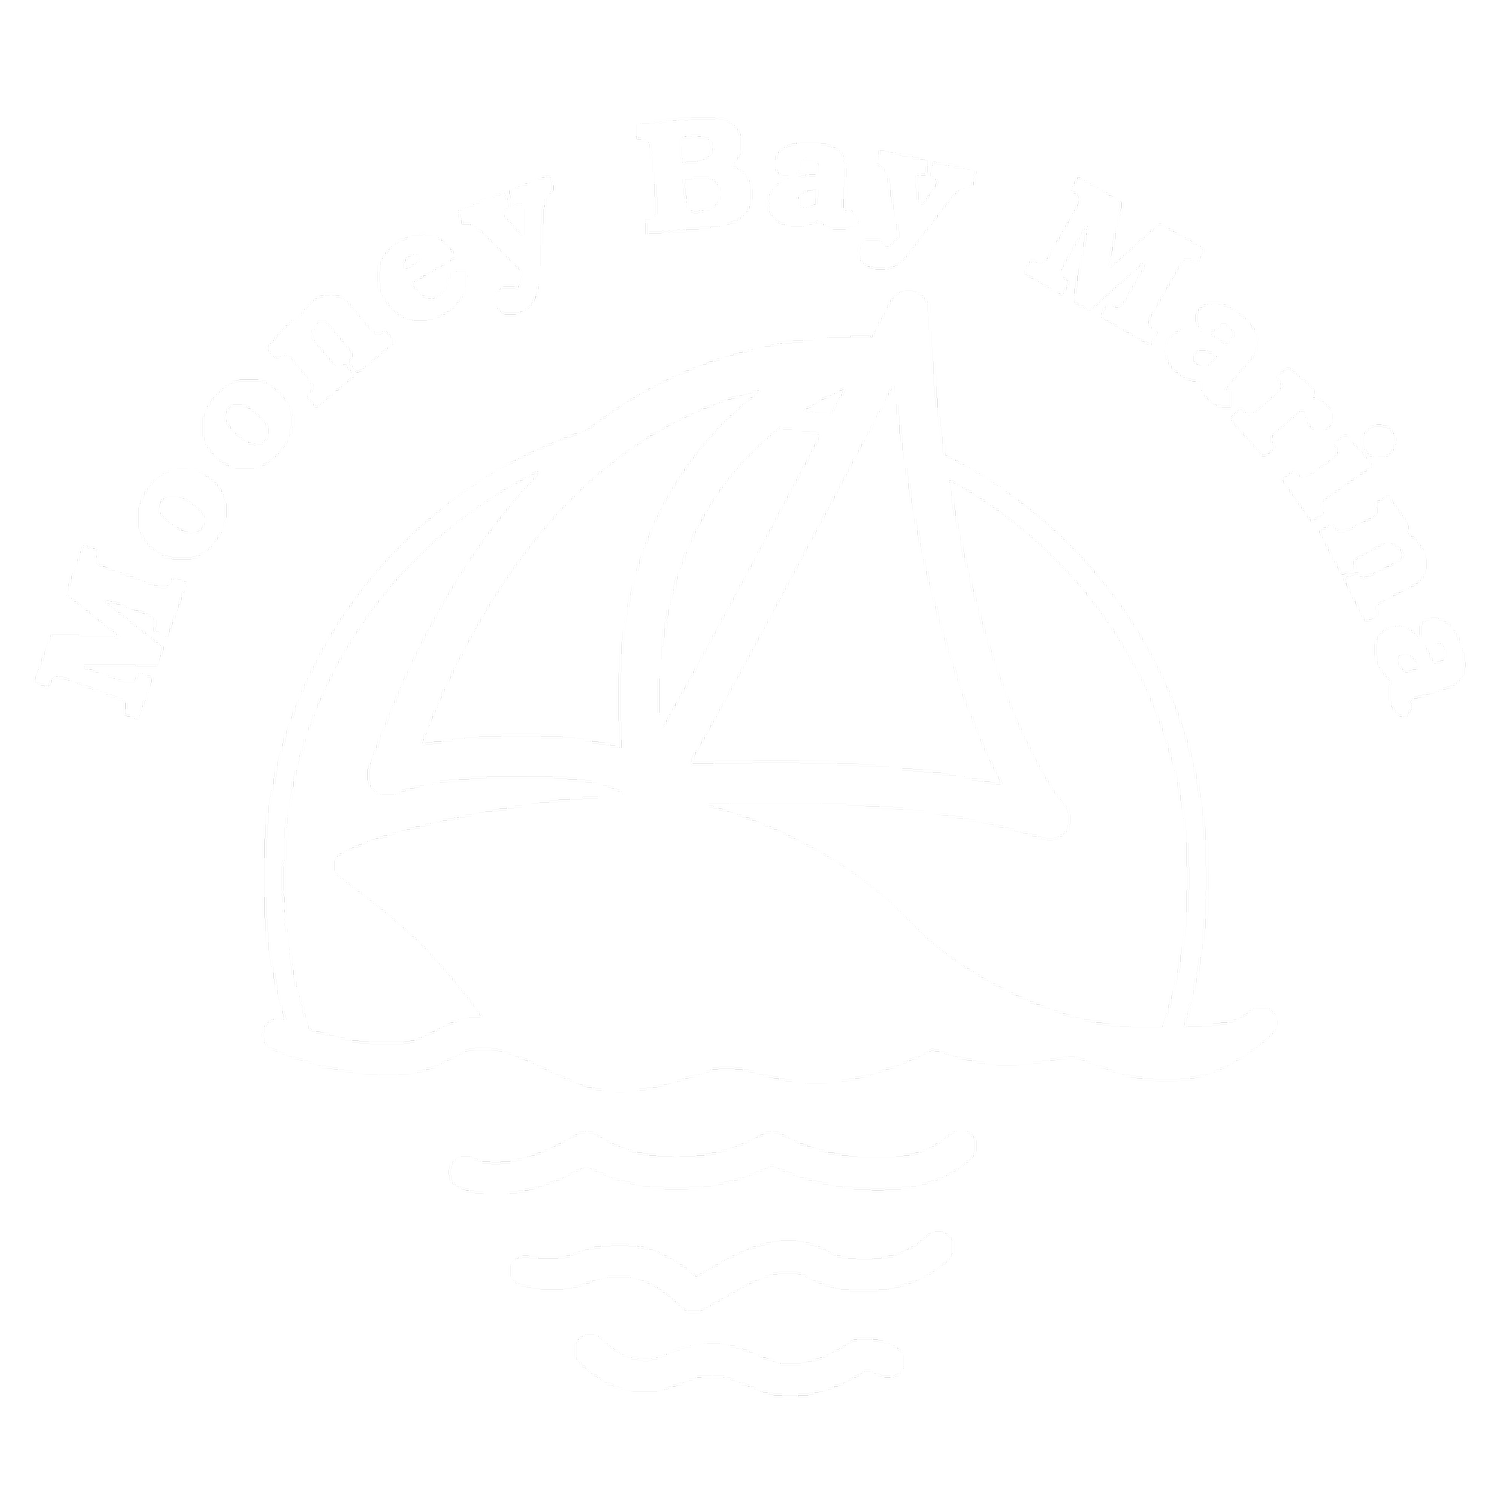 Mooney Bay Marina